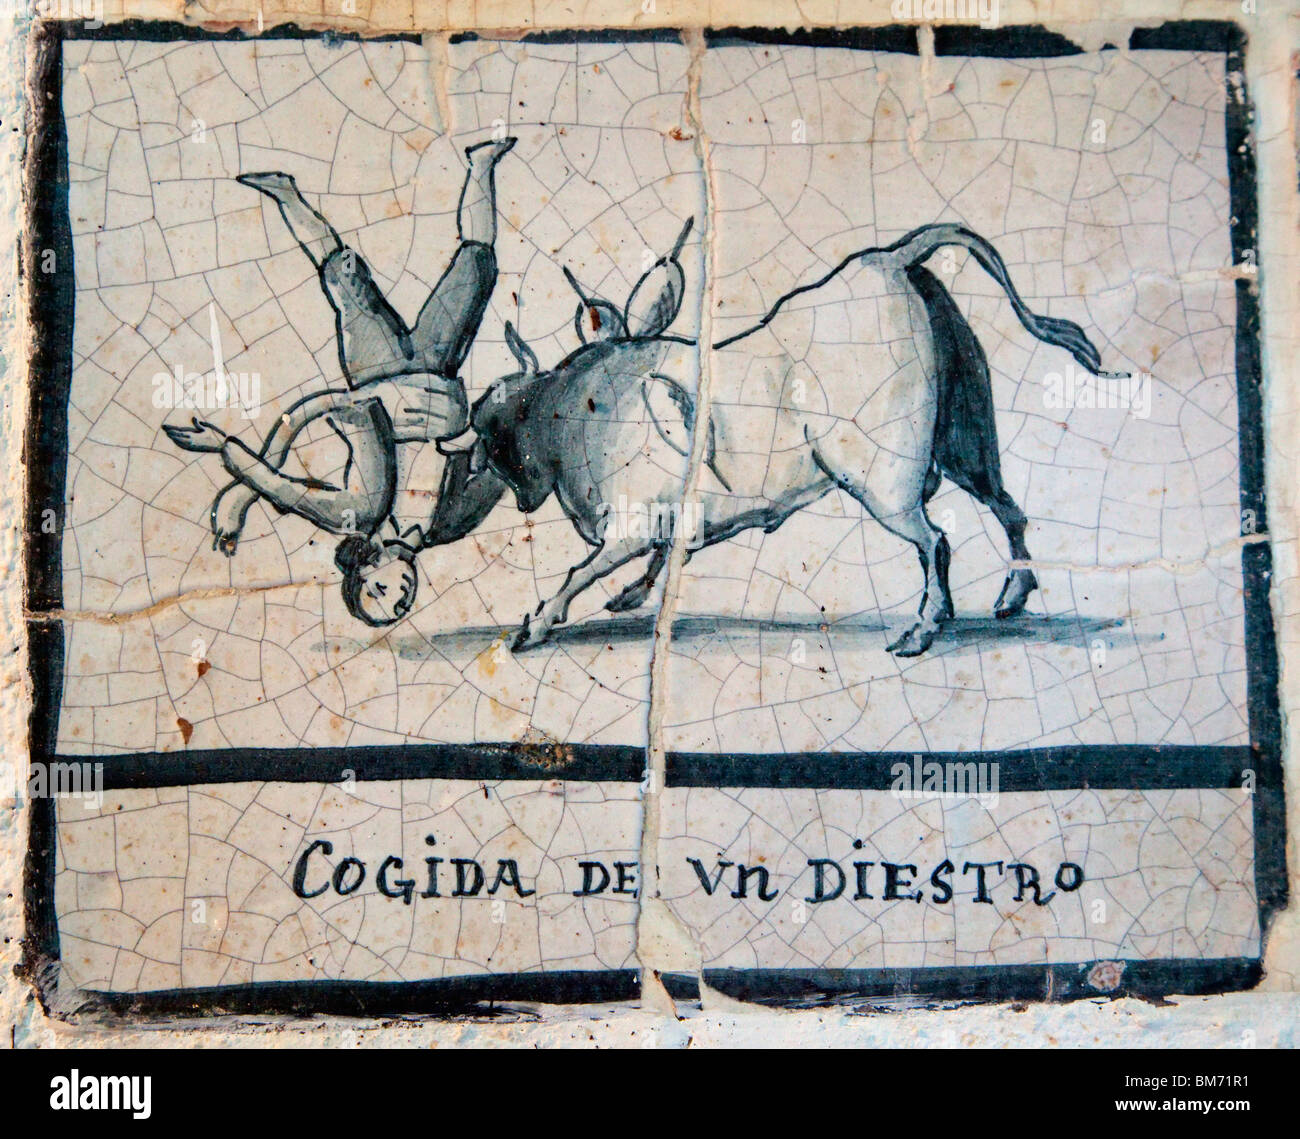 Malaga Costa del Sol, Espagne. Scène de corrida sur carreaux de céramique antique dans le Bar El Pimpi. Goring d'un matador Banque D'Images